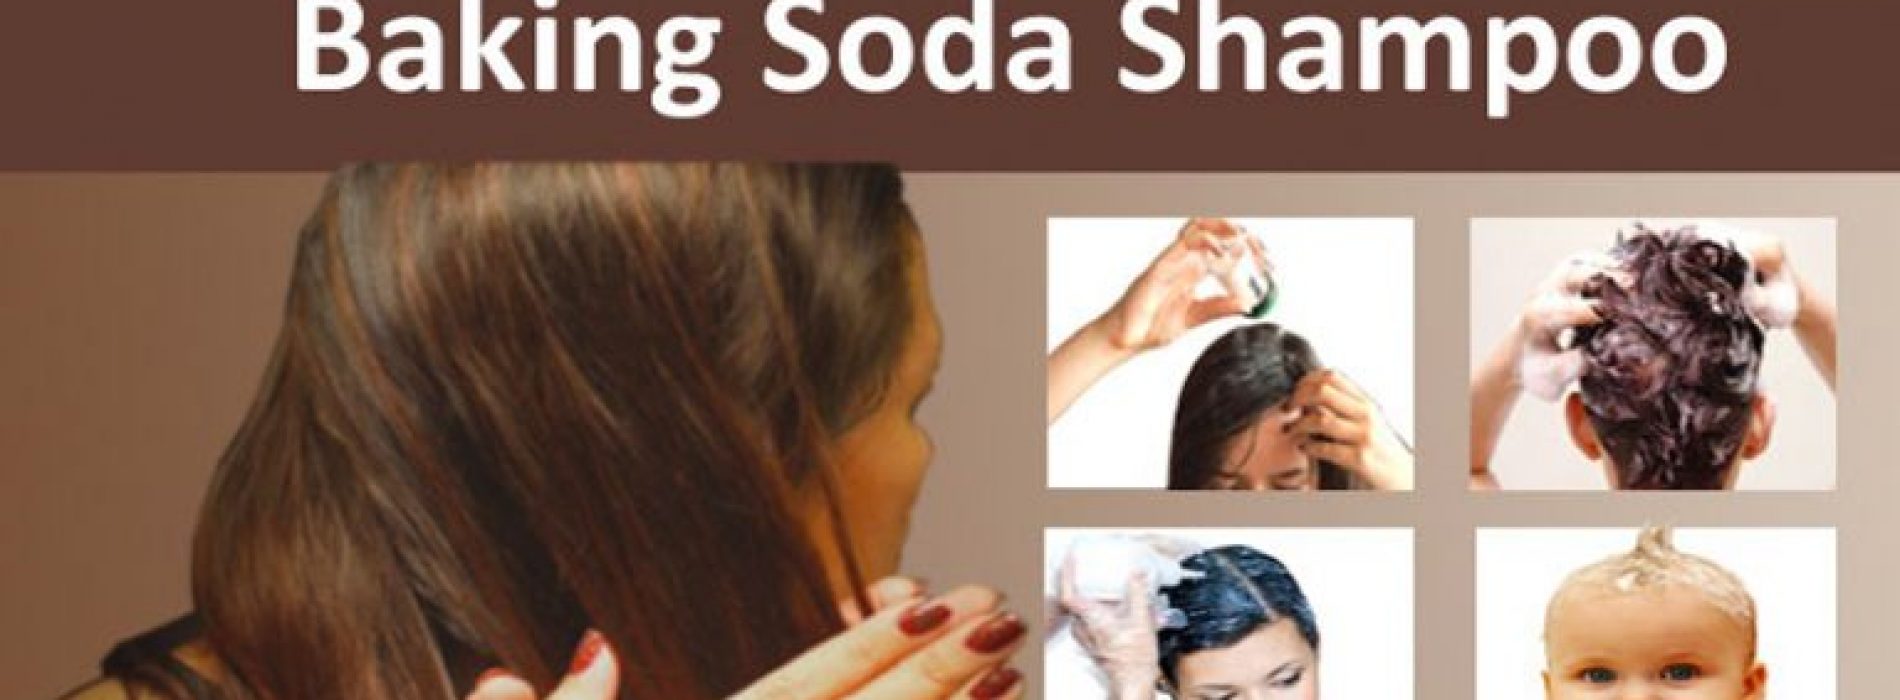 Reguliere shampoo is gevuld met duizenden vervelende chemicaliën. Gebruik in plaats daarvan dit natuurlijke mengsel